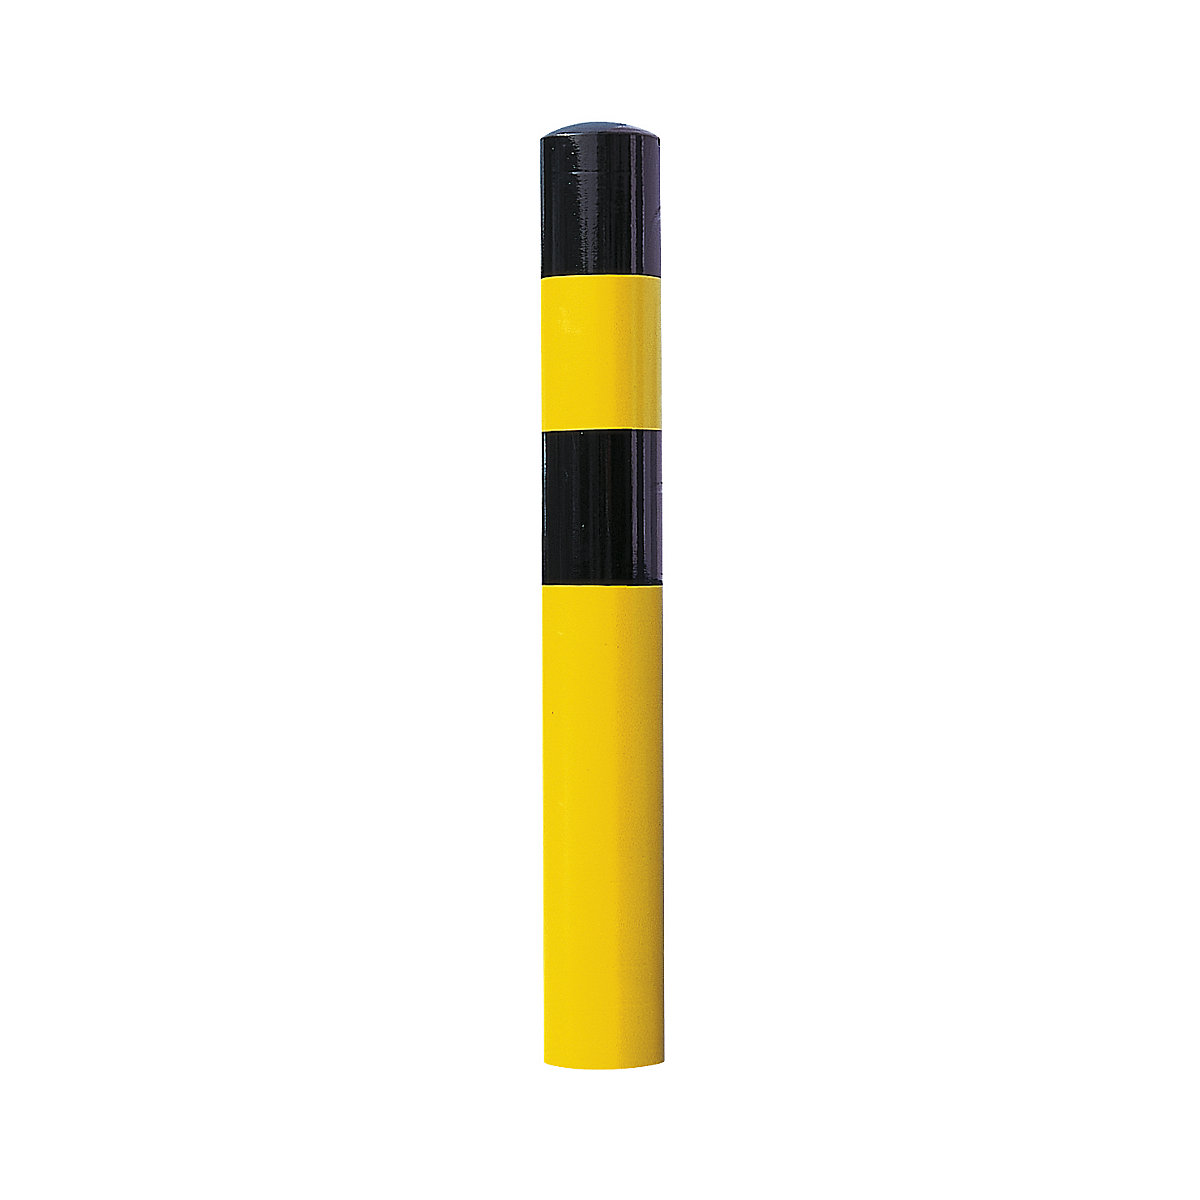 Rammschutz-Poller, Größe XL, schwarz / gelb, zum Einbetonieren